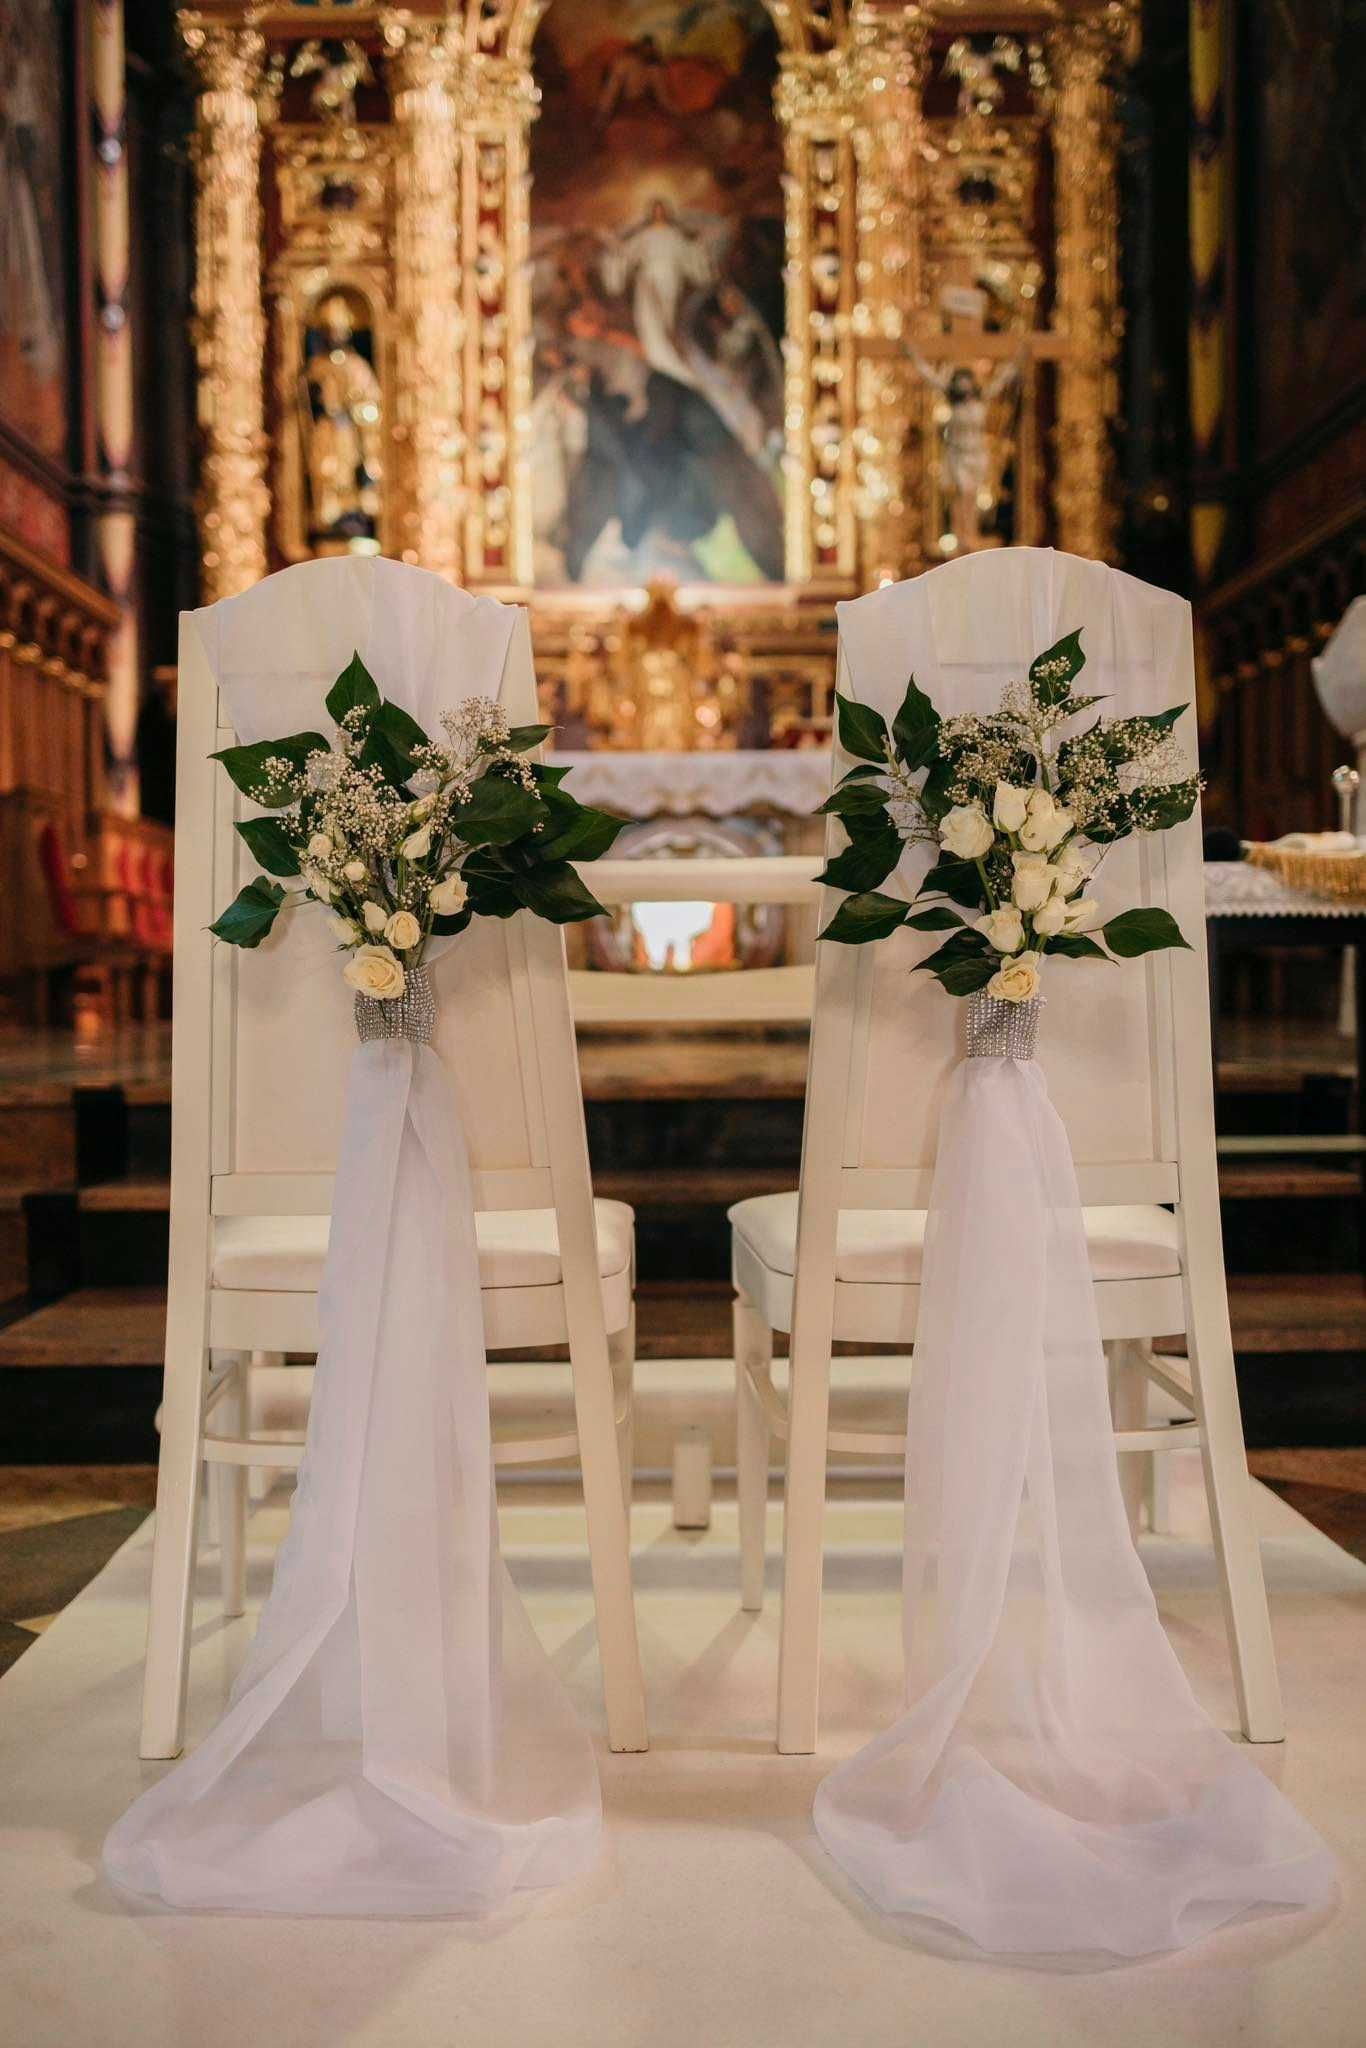 Ślub, wesele, dekoracje kościół biały dywan świeczniki hymn o miłości